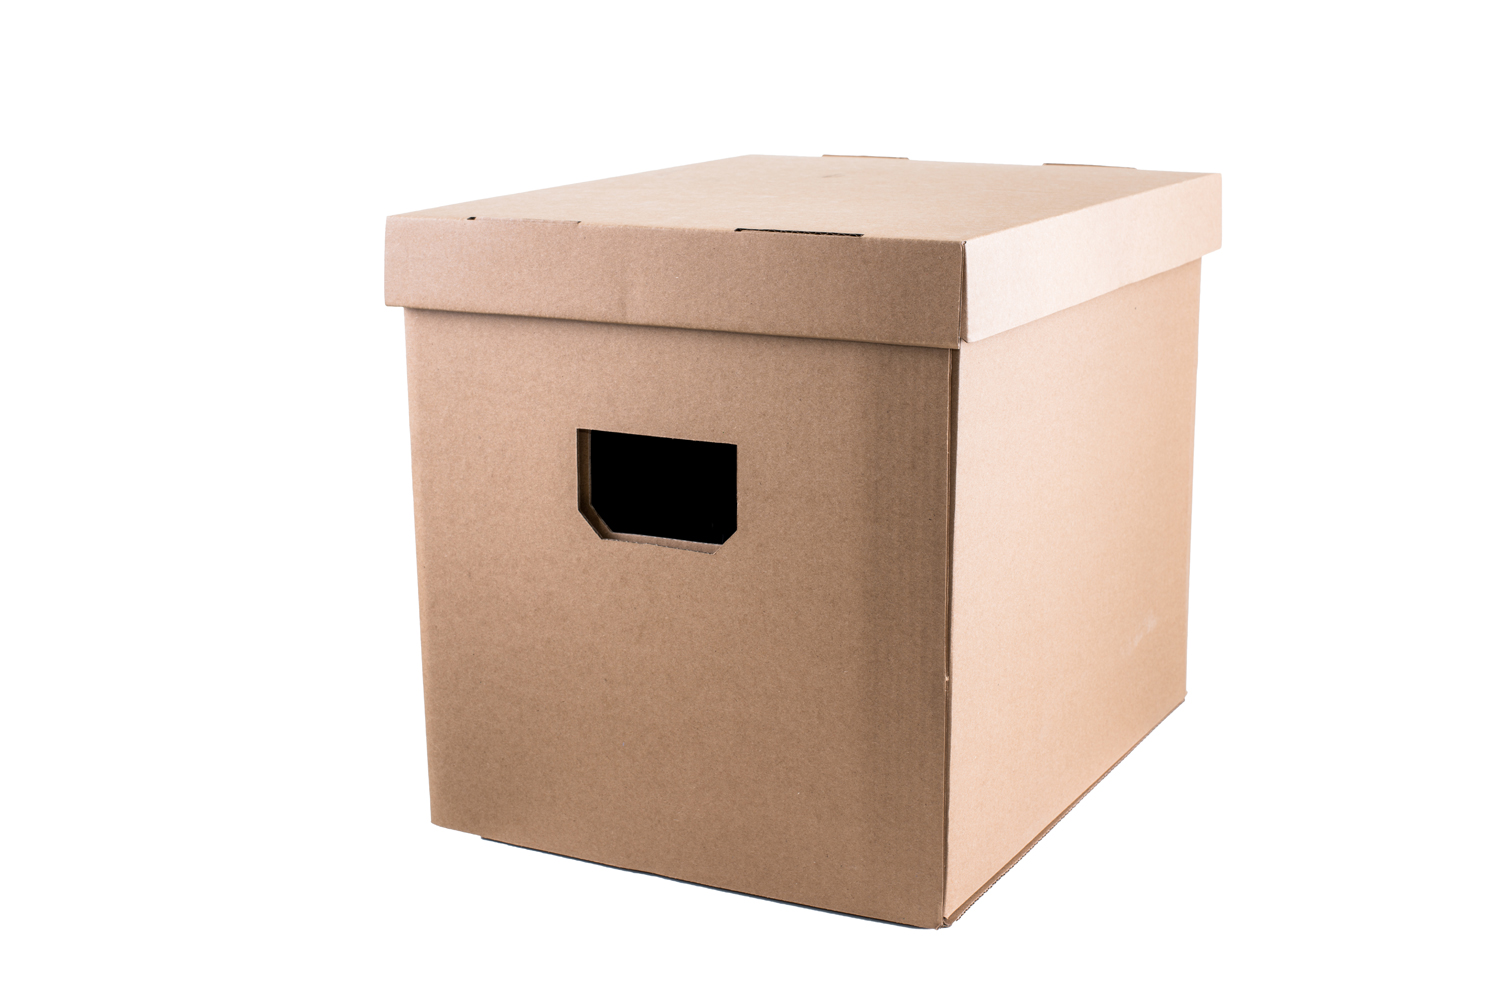 7EVEN Transport, Umzug, Stapel und z.b. mehr Box Karton vieles für und Ordner Aufbewahrungsbox Schallplatten, Aufbewahrungs